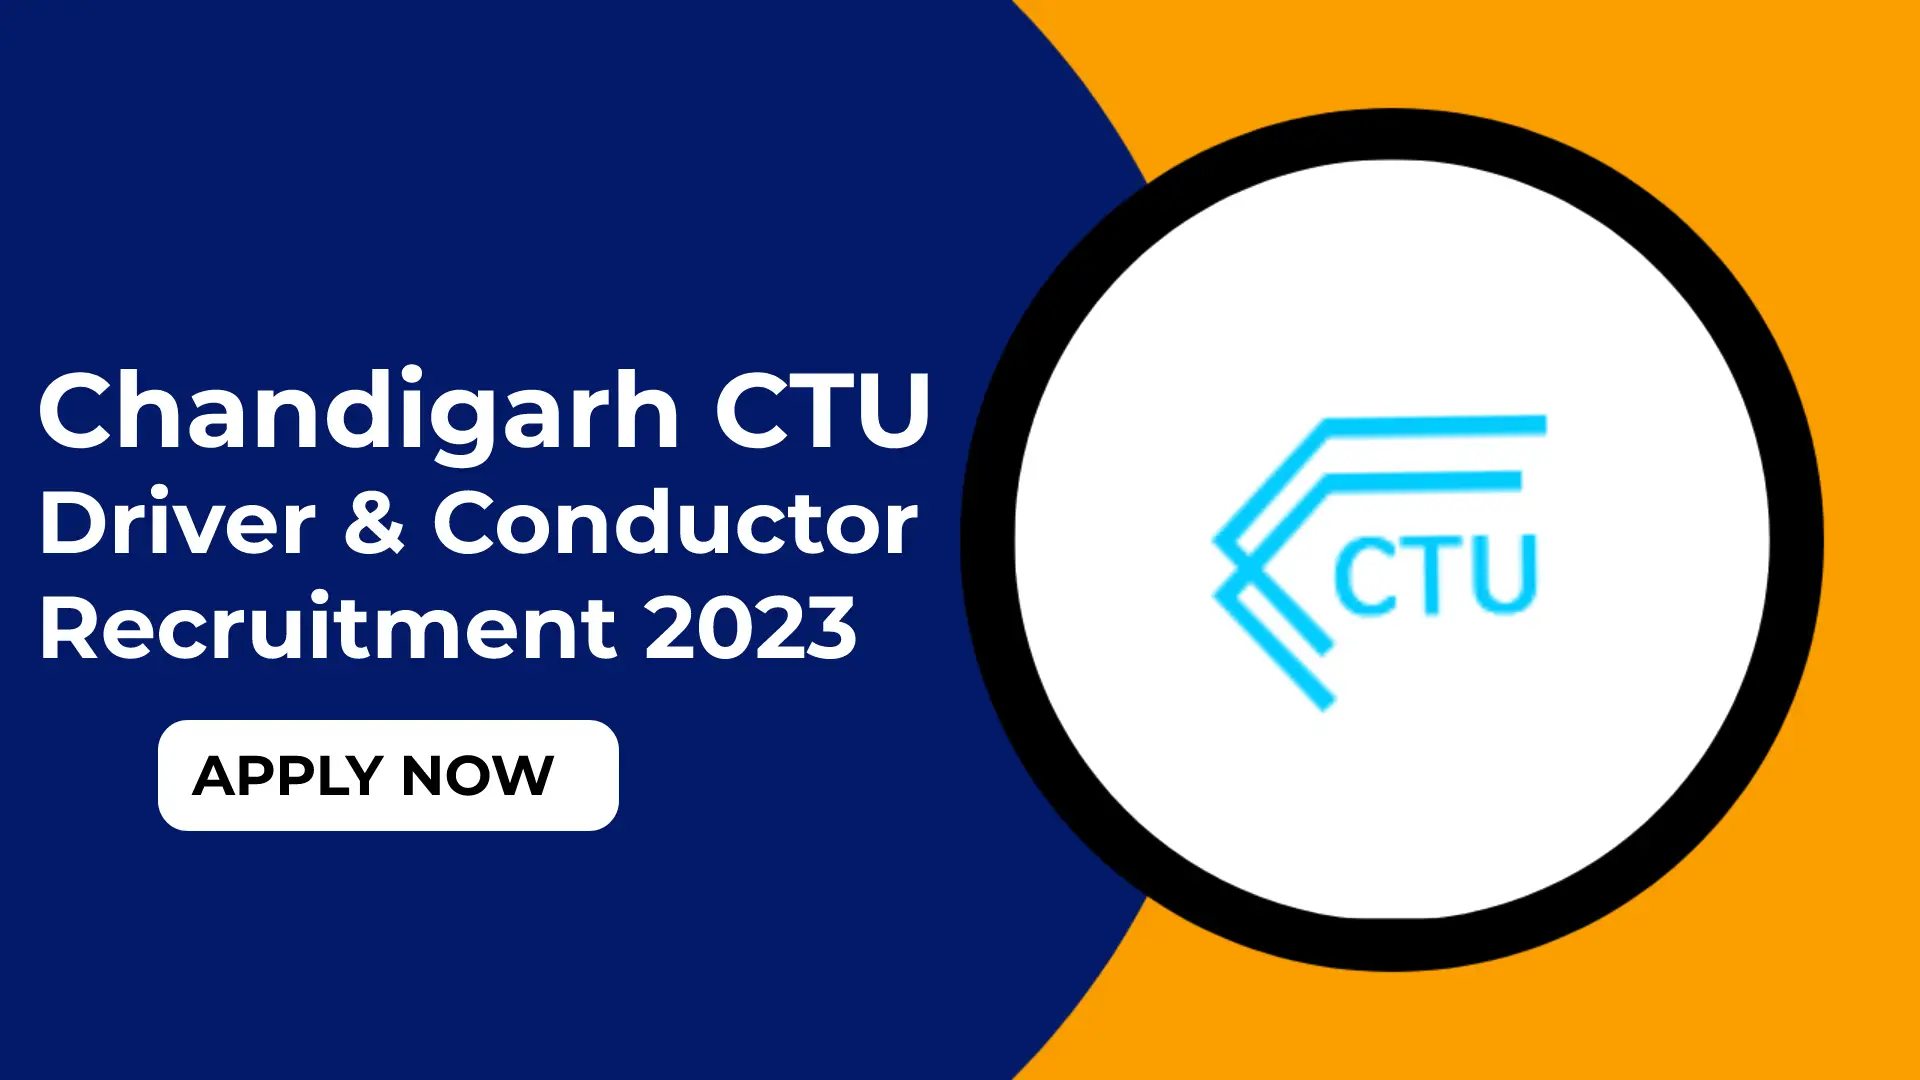 Chandigarh CTU Driver & Conductor Recruitment 2023